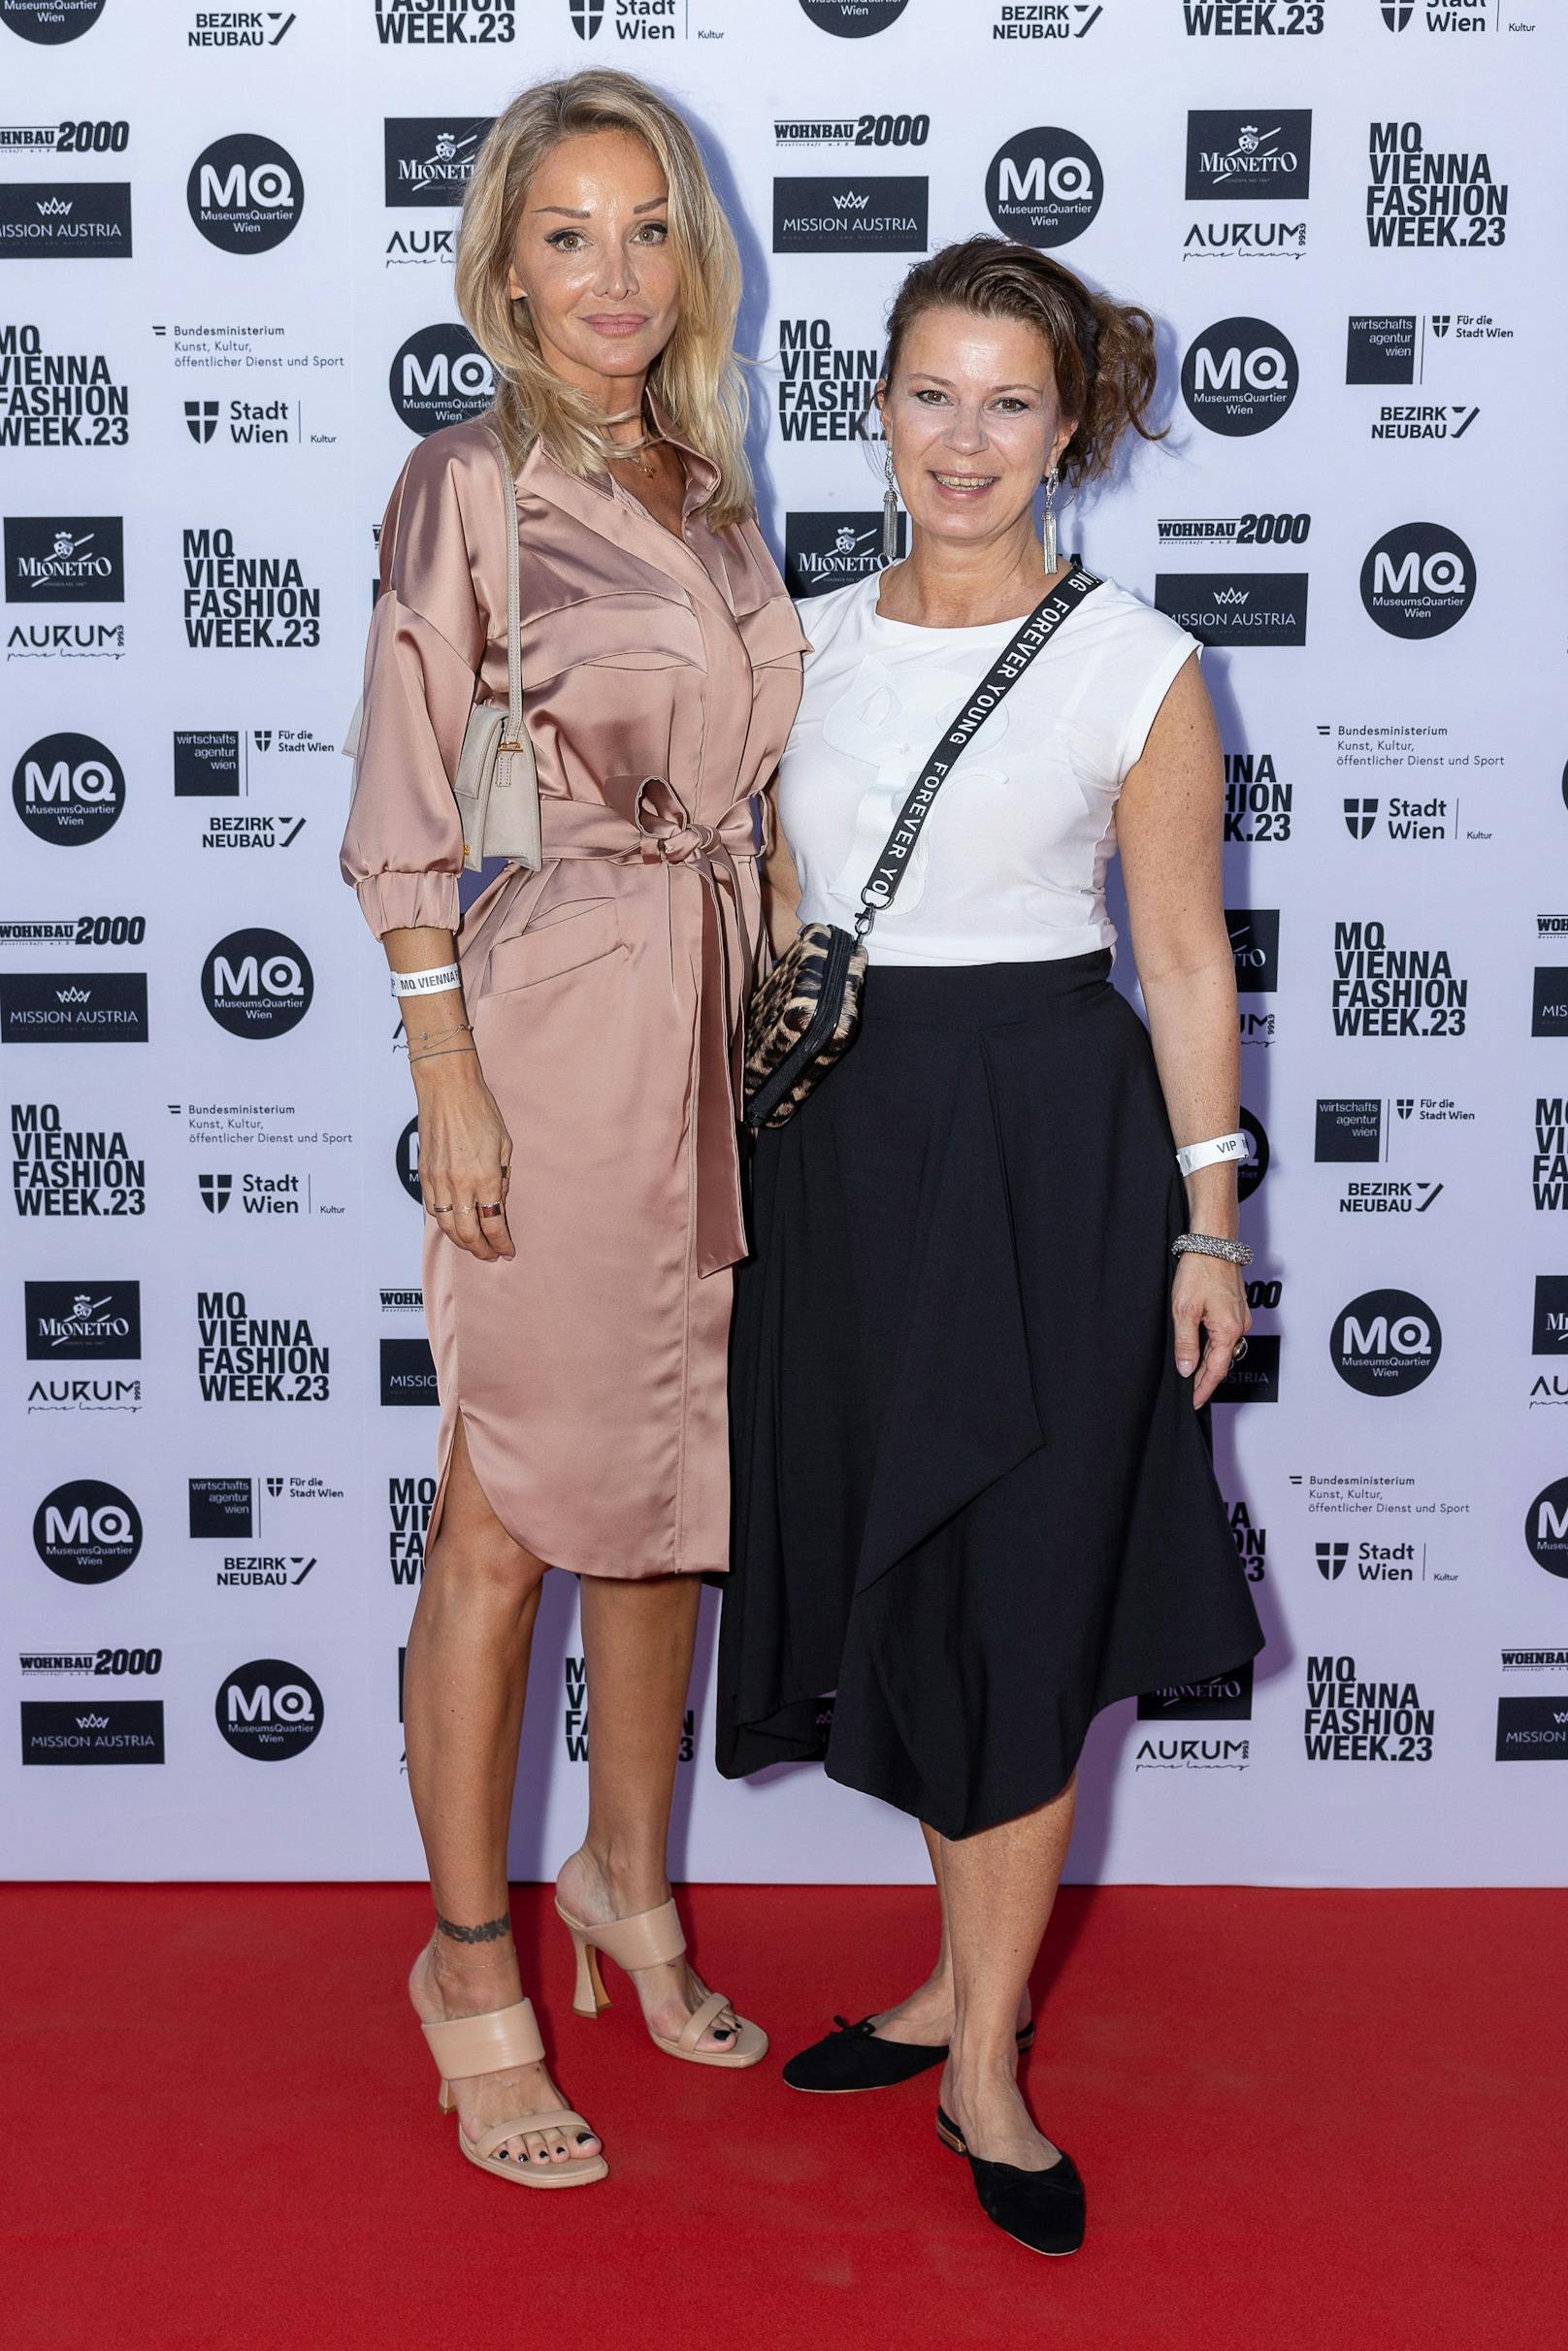 Designerinnen Martina Müller ("Callisti") und Sabine Karner // MQ Vienna Fashion Week 2023